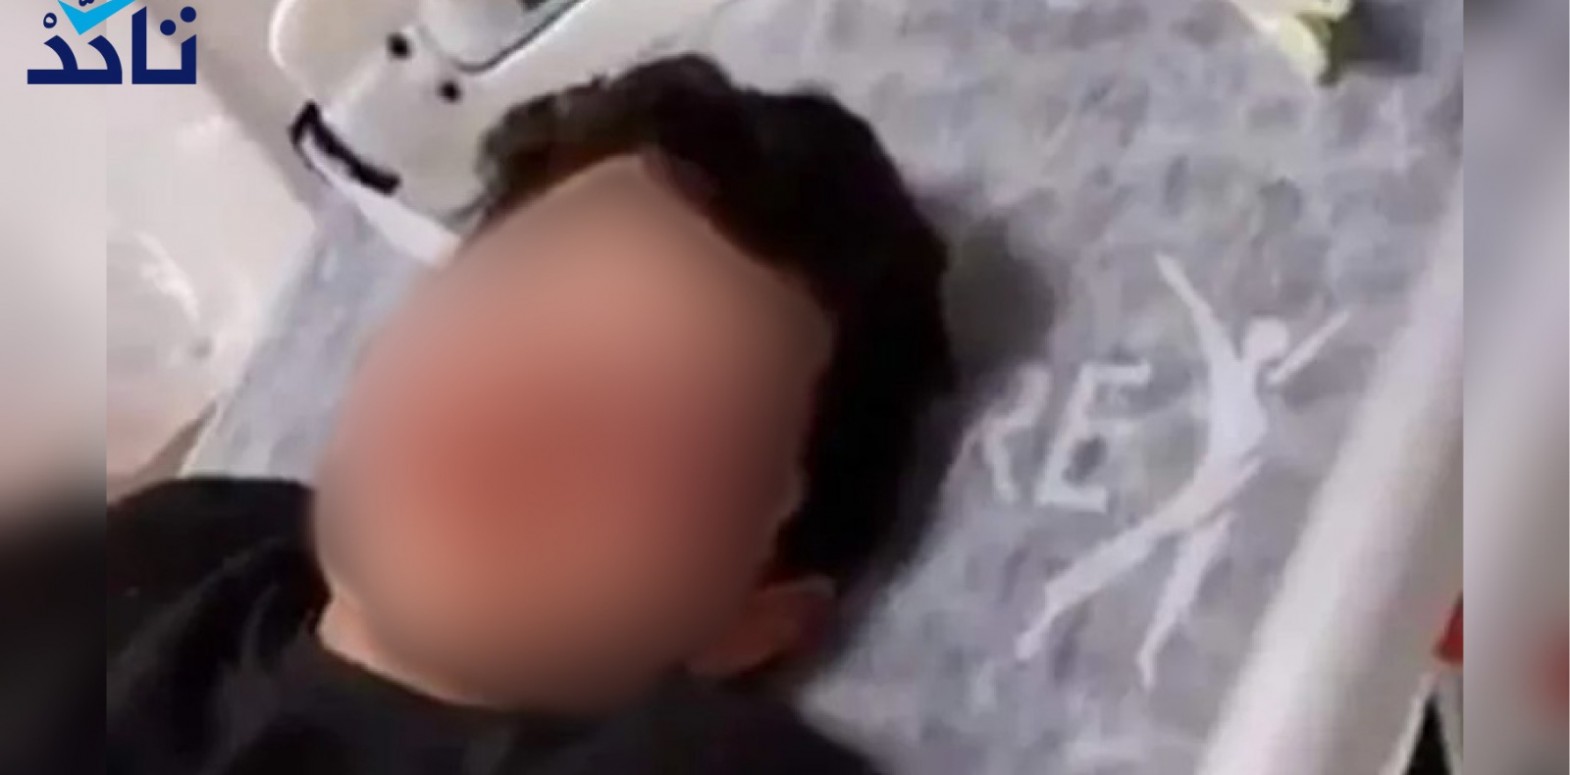 Antalya’da darp edilen çocuğun babası Teekked’e çocuğun tecavüze uğradığını yalanladı